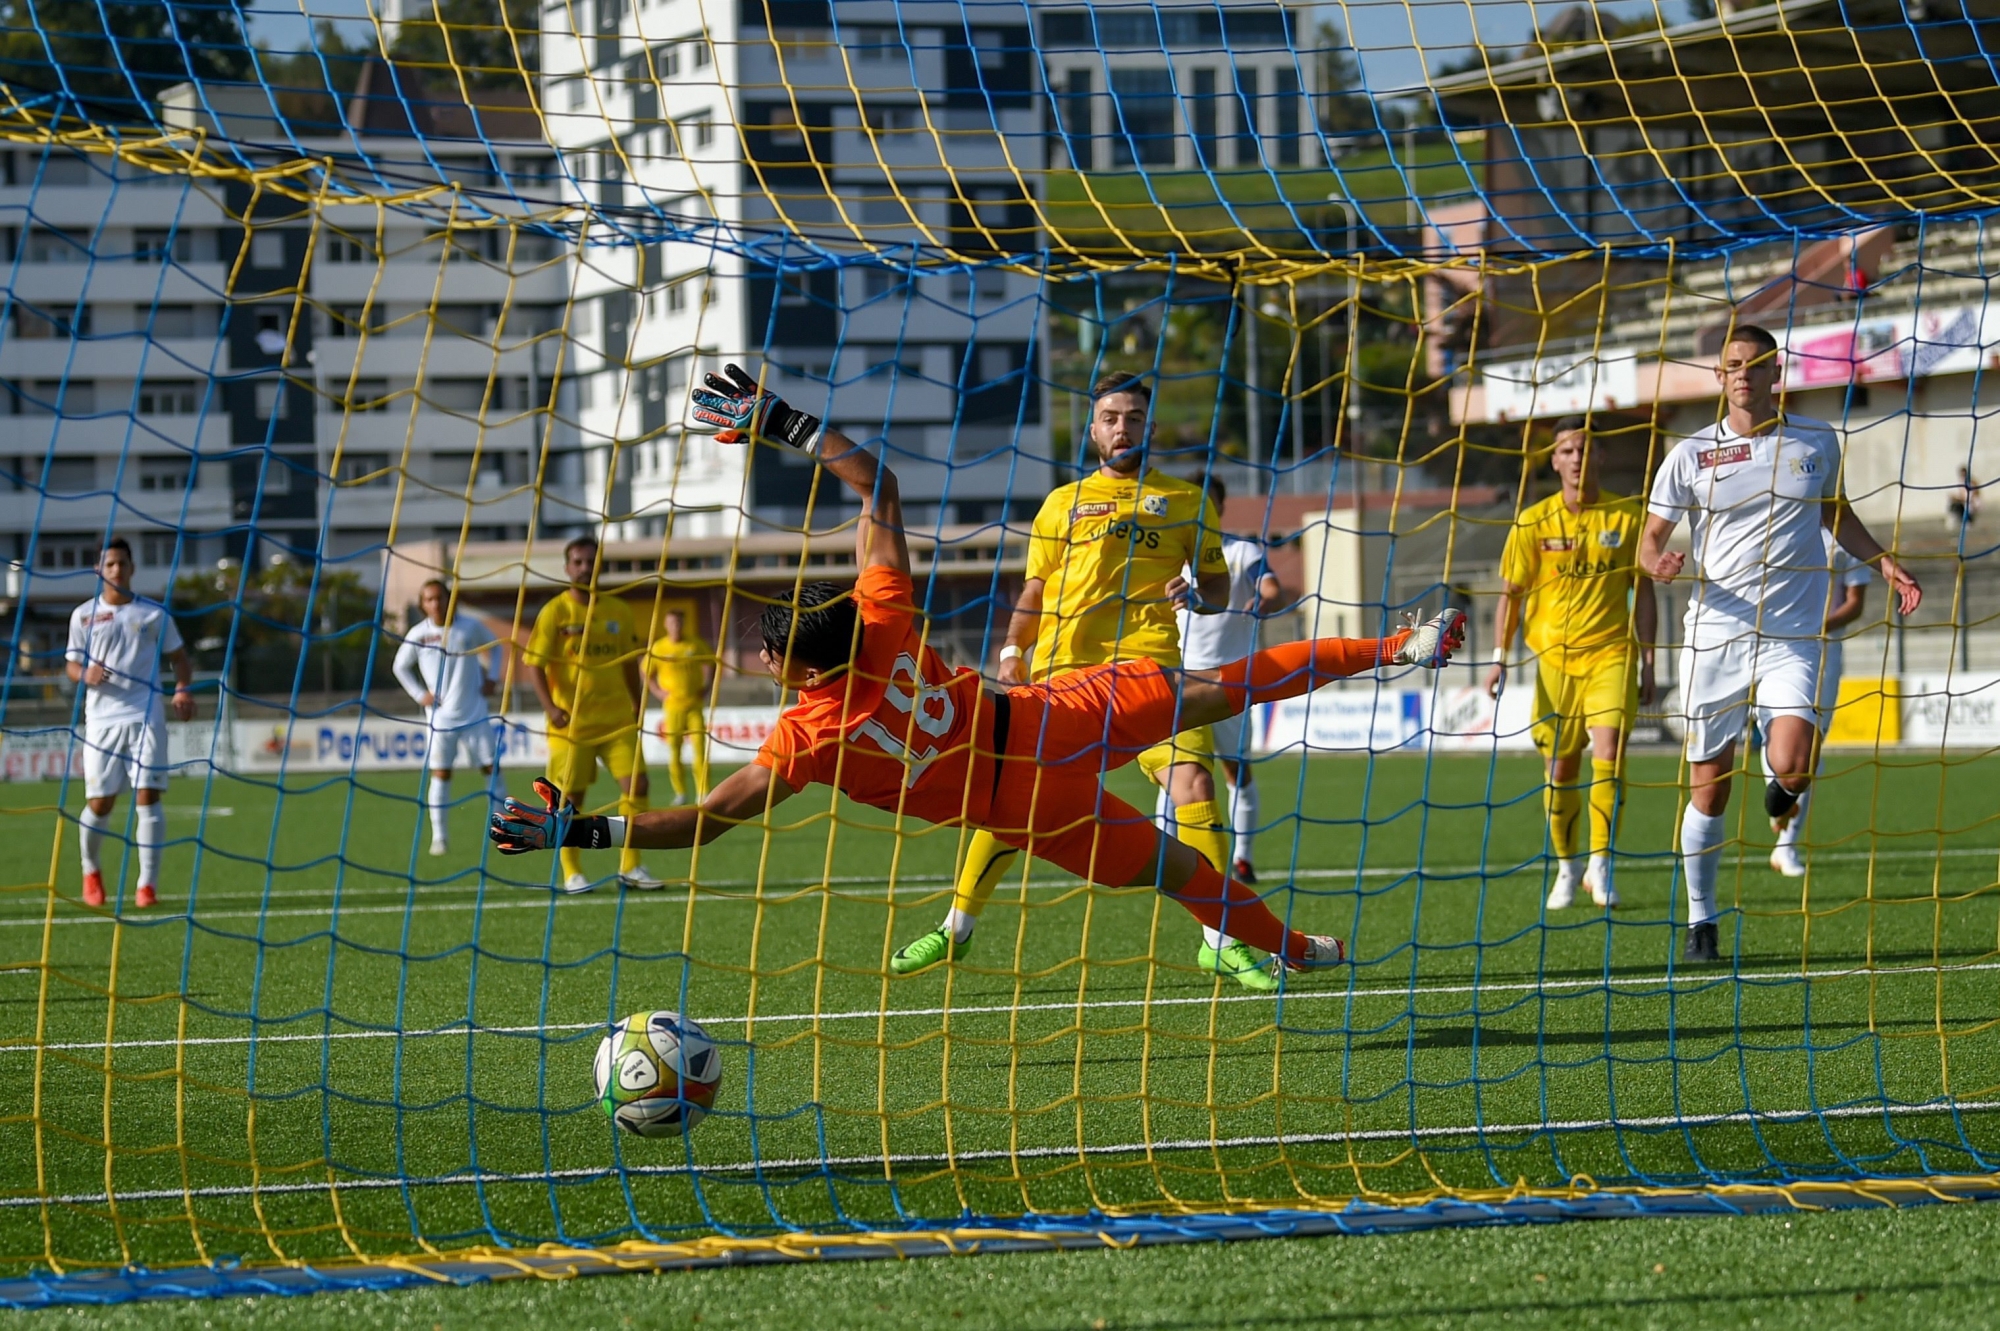 Lorsque Vedat Efendic a ouvert le score pour le FC La Chaux-de-Fonds, la journée s'annonçait bien pour les Chaux-de-Fonniers à ce moment-là...